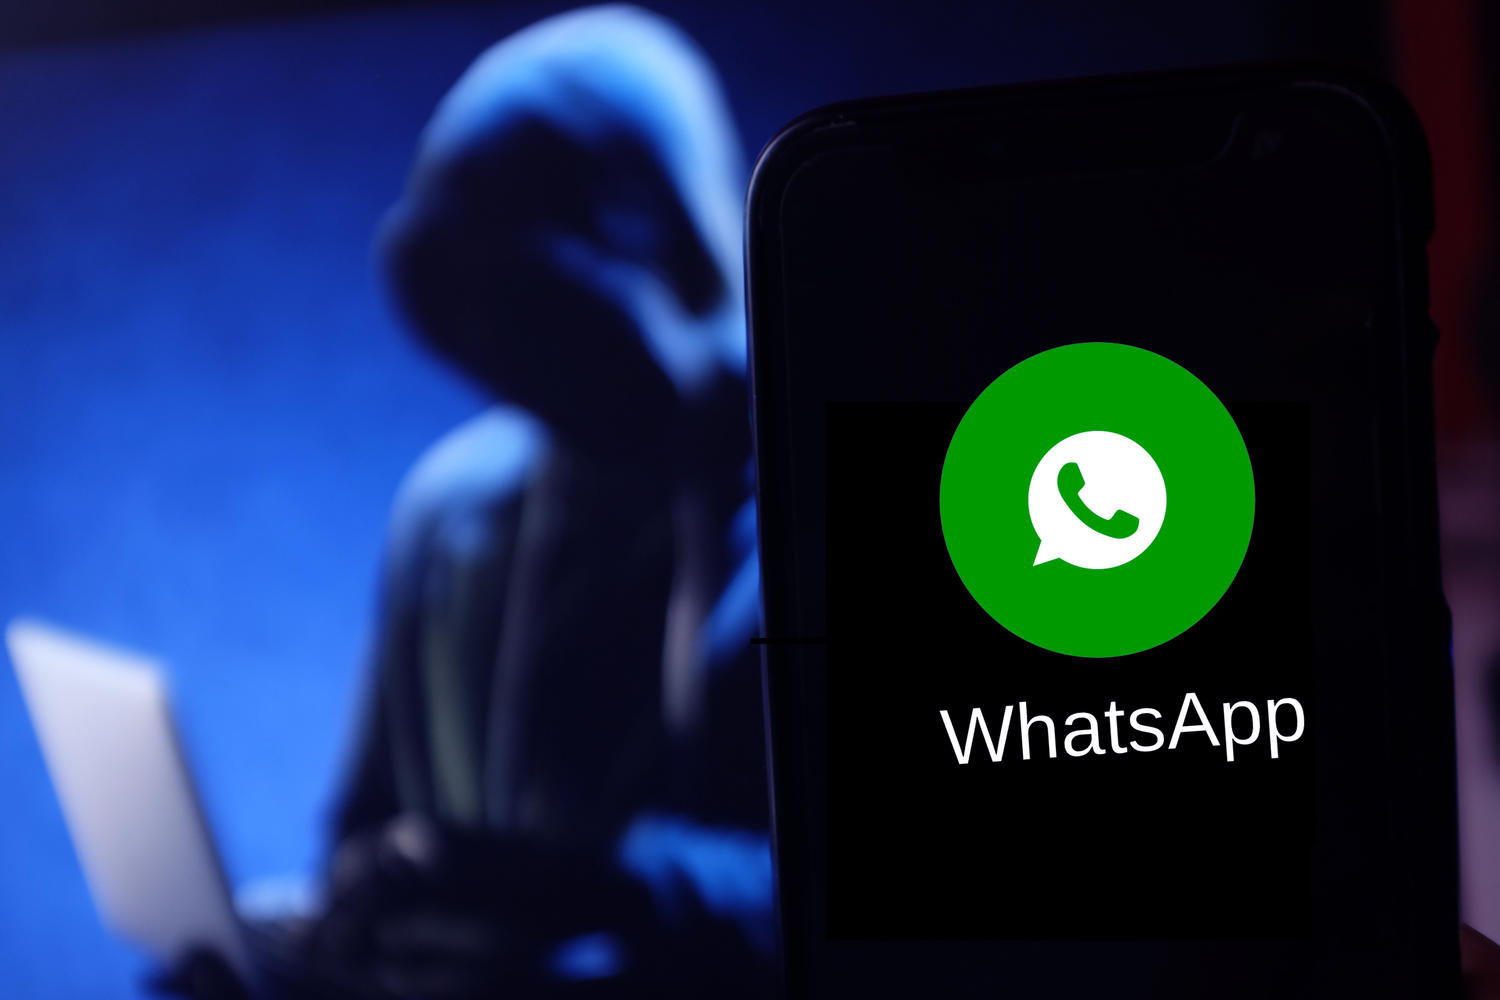 Вирус-червь распространяется через WhatsApp и заражает телефоны на базе Android